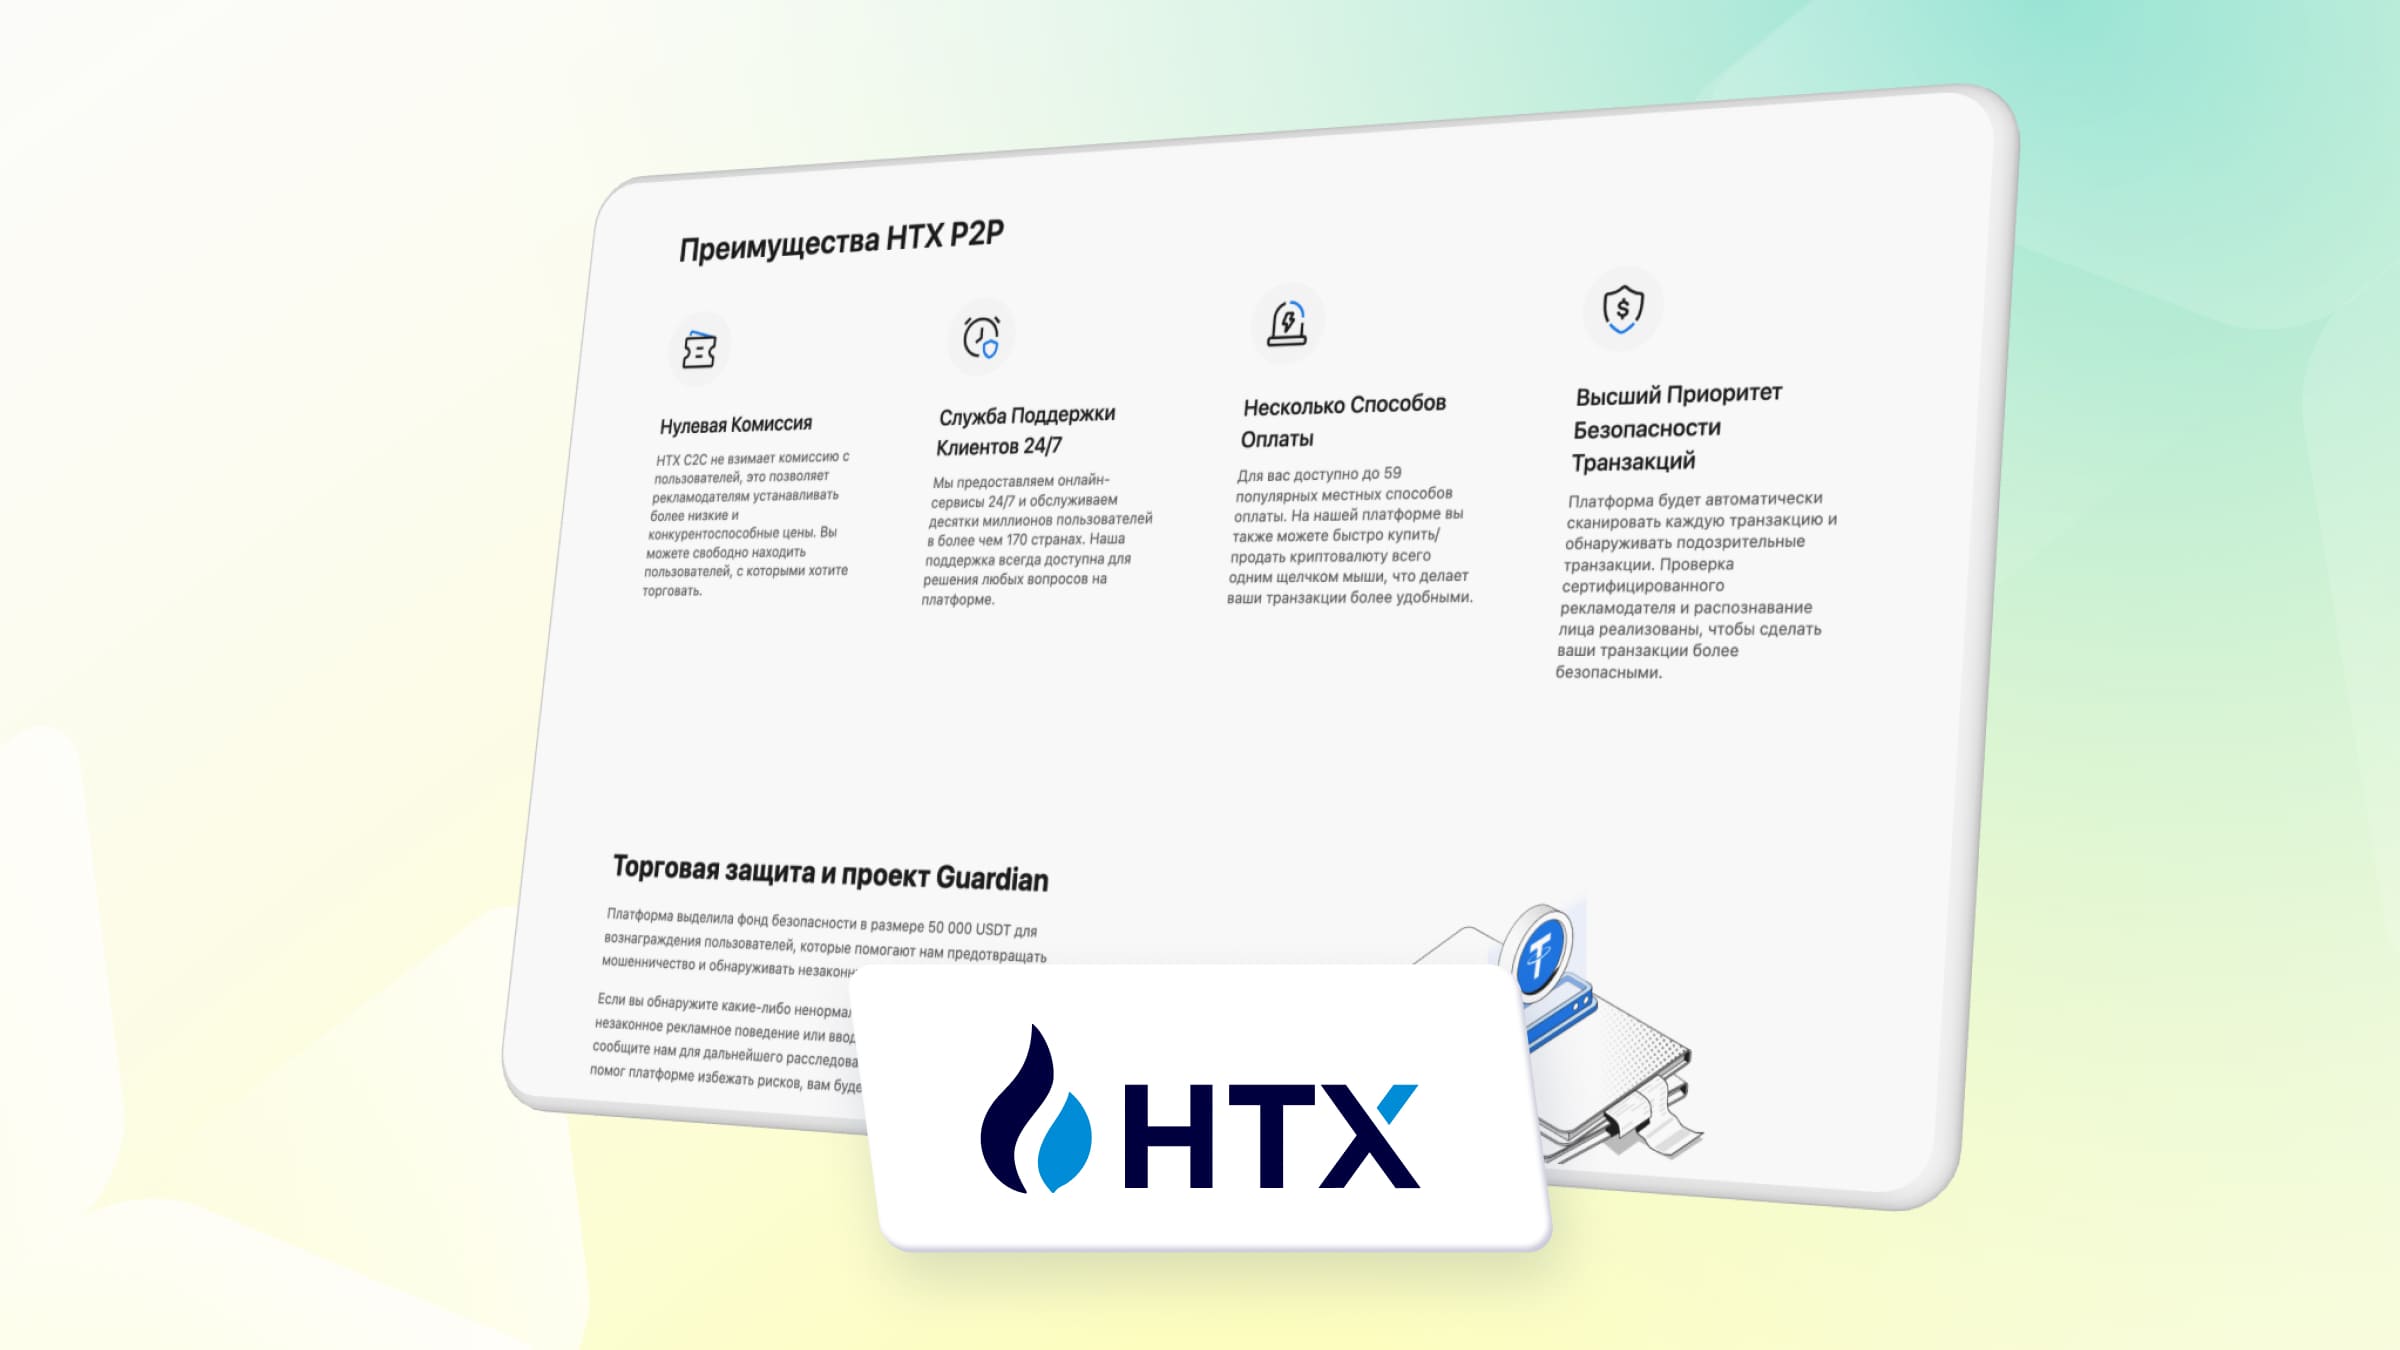 HTX (Huobi) — популярная P2P-площадка для покупки криптовалют.